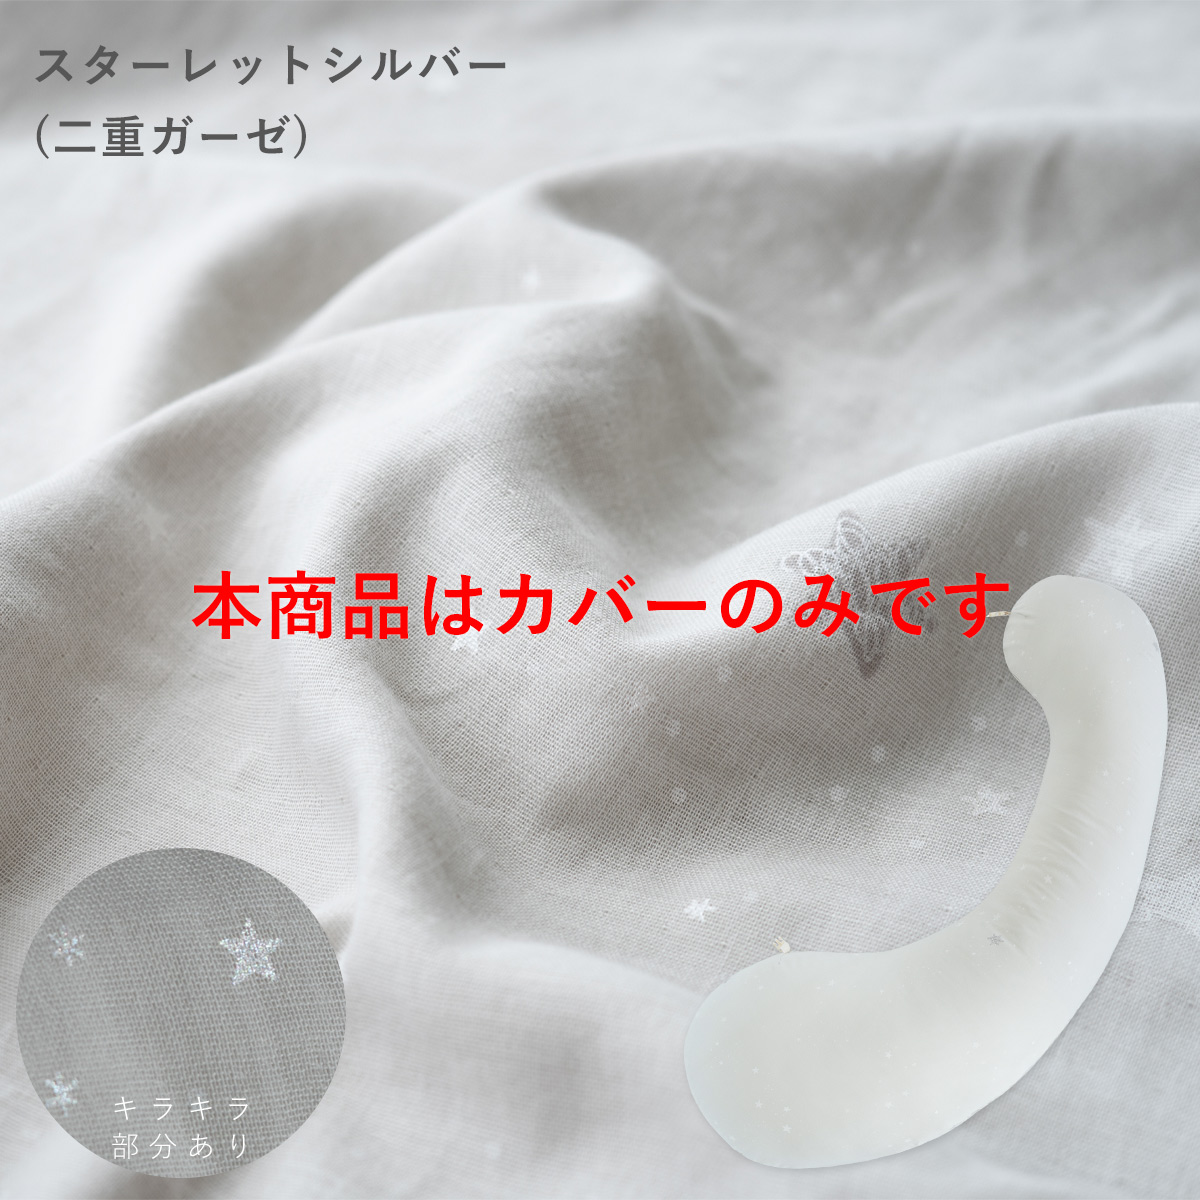 抱き枕 カバーのみ 妊婦 授乳クッション 授乳枕 妊娠中 マタニティ 日本製  頭も足も乗せられる ...